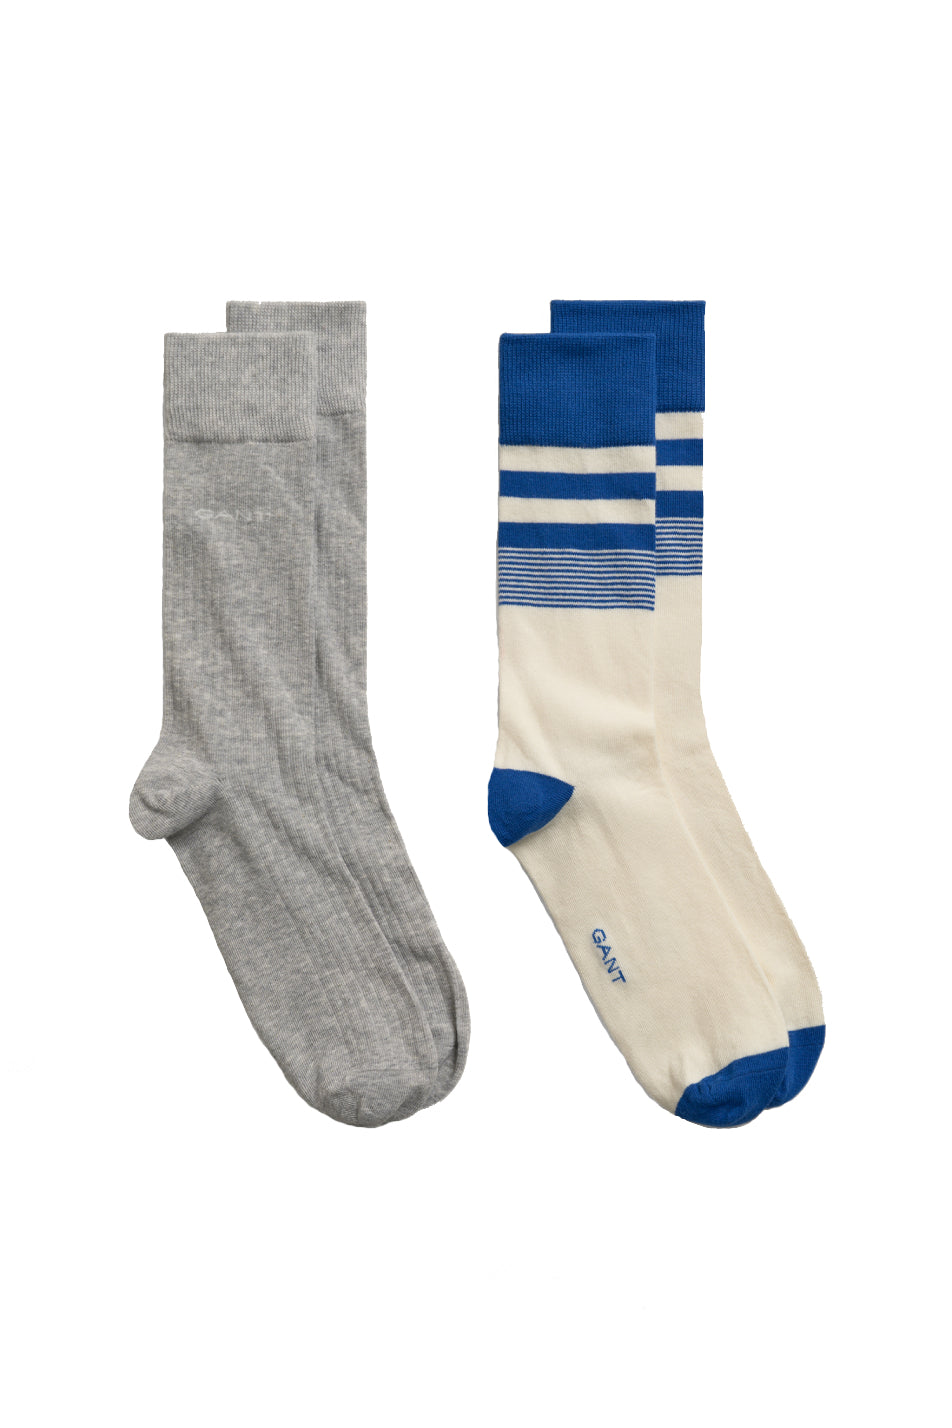 Gant 2 Pack Men's Stripe Socks